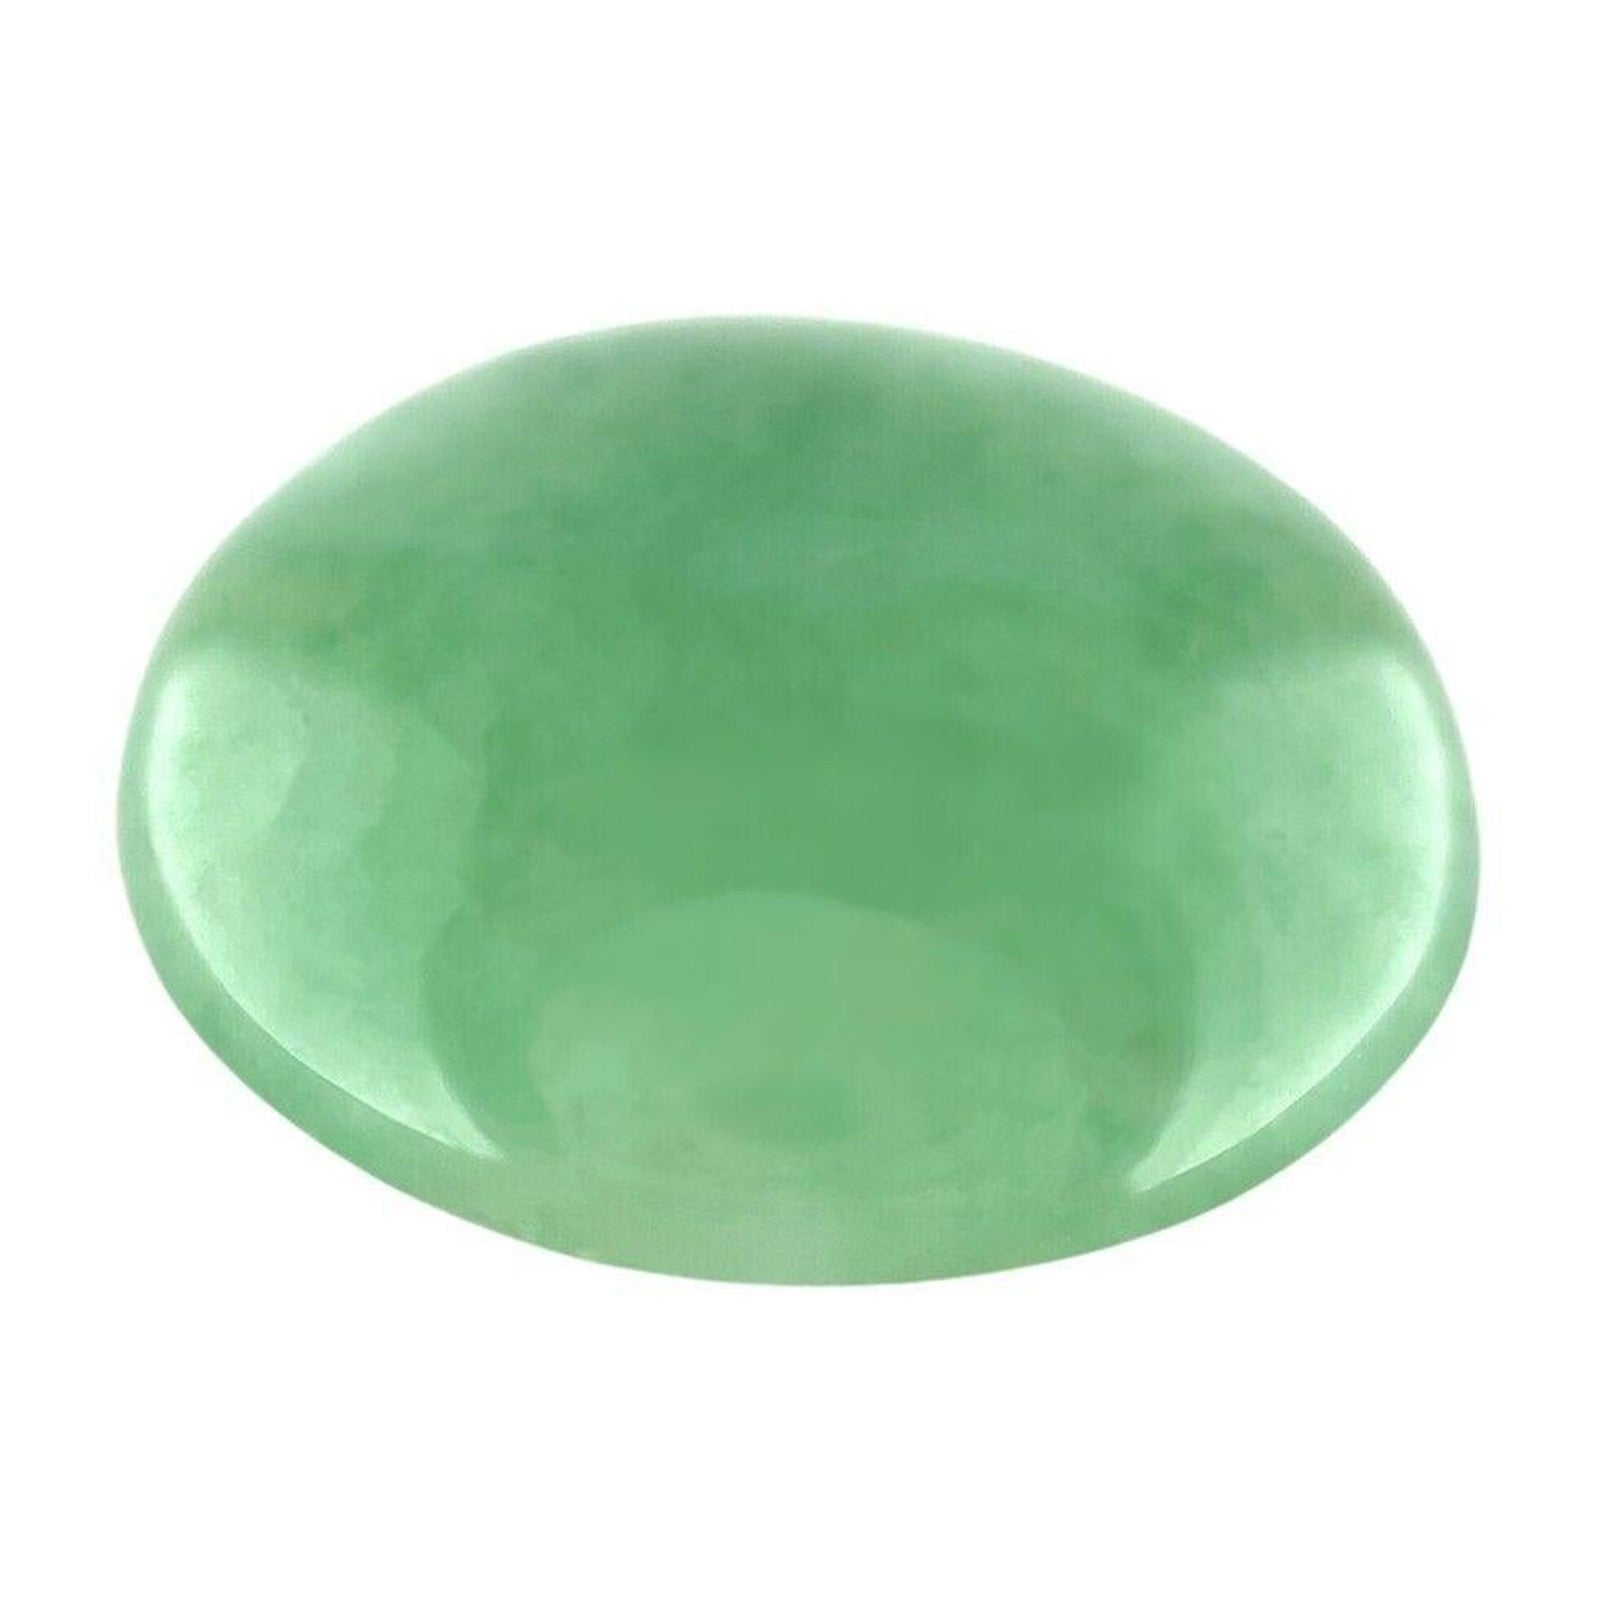 9.87ct Green Jadeite Jade IGI Certified Natural ‘A’ Grade Oval Cabochon Gem For Sale